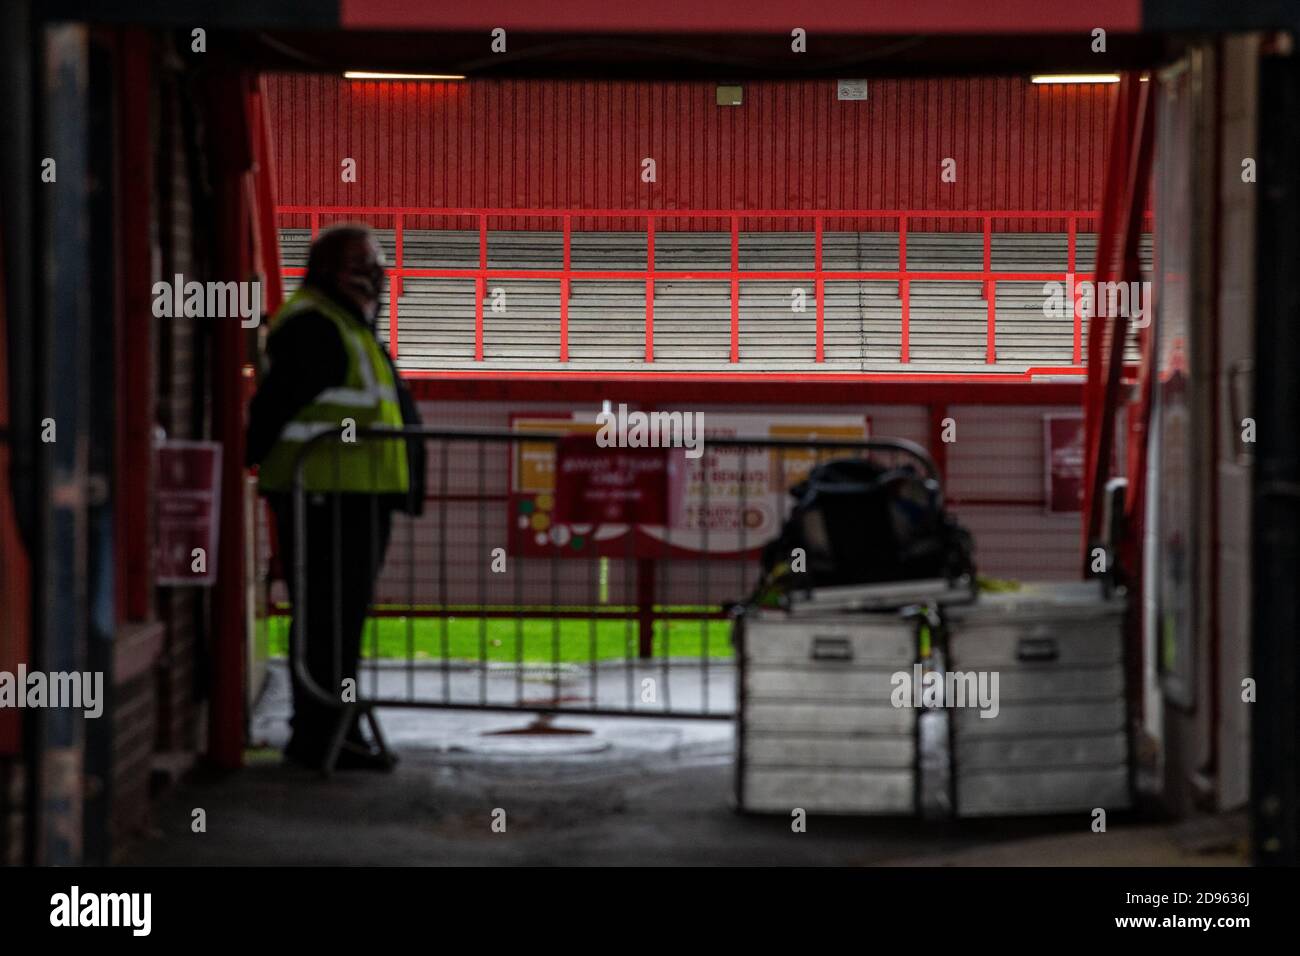 El mayordomo está junto a la entrada de los jugadores en el estadio vacío de fútbol De juego que se juega a puerta cerrada durante la pandemia de Covid-19 En Inglaterra, Reino Unido Foto de stock